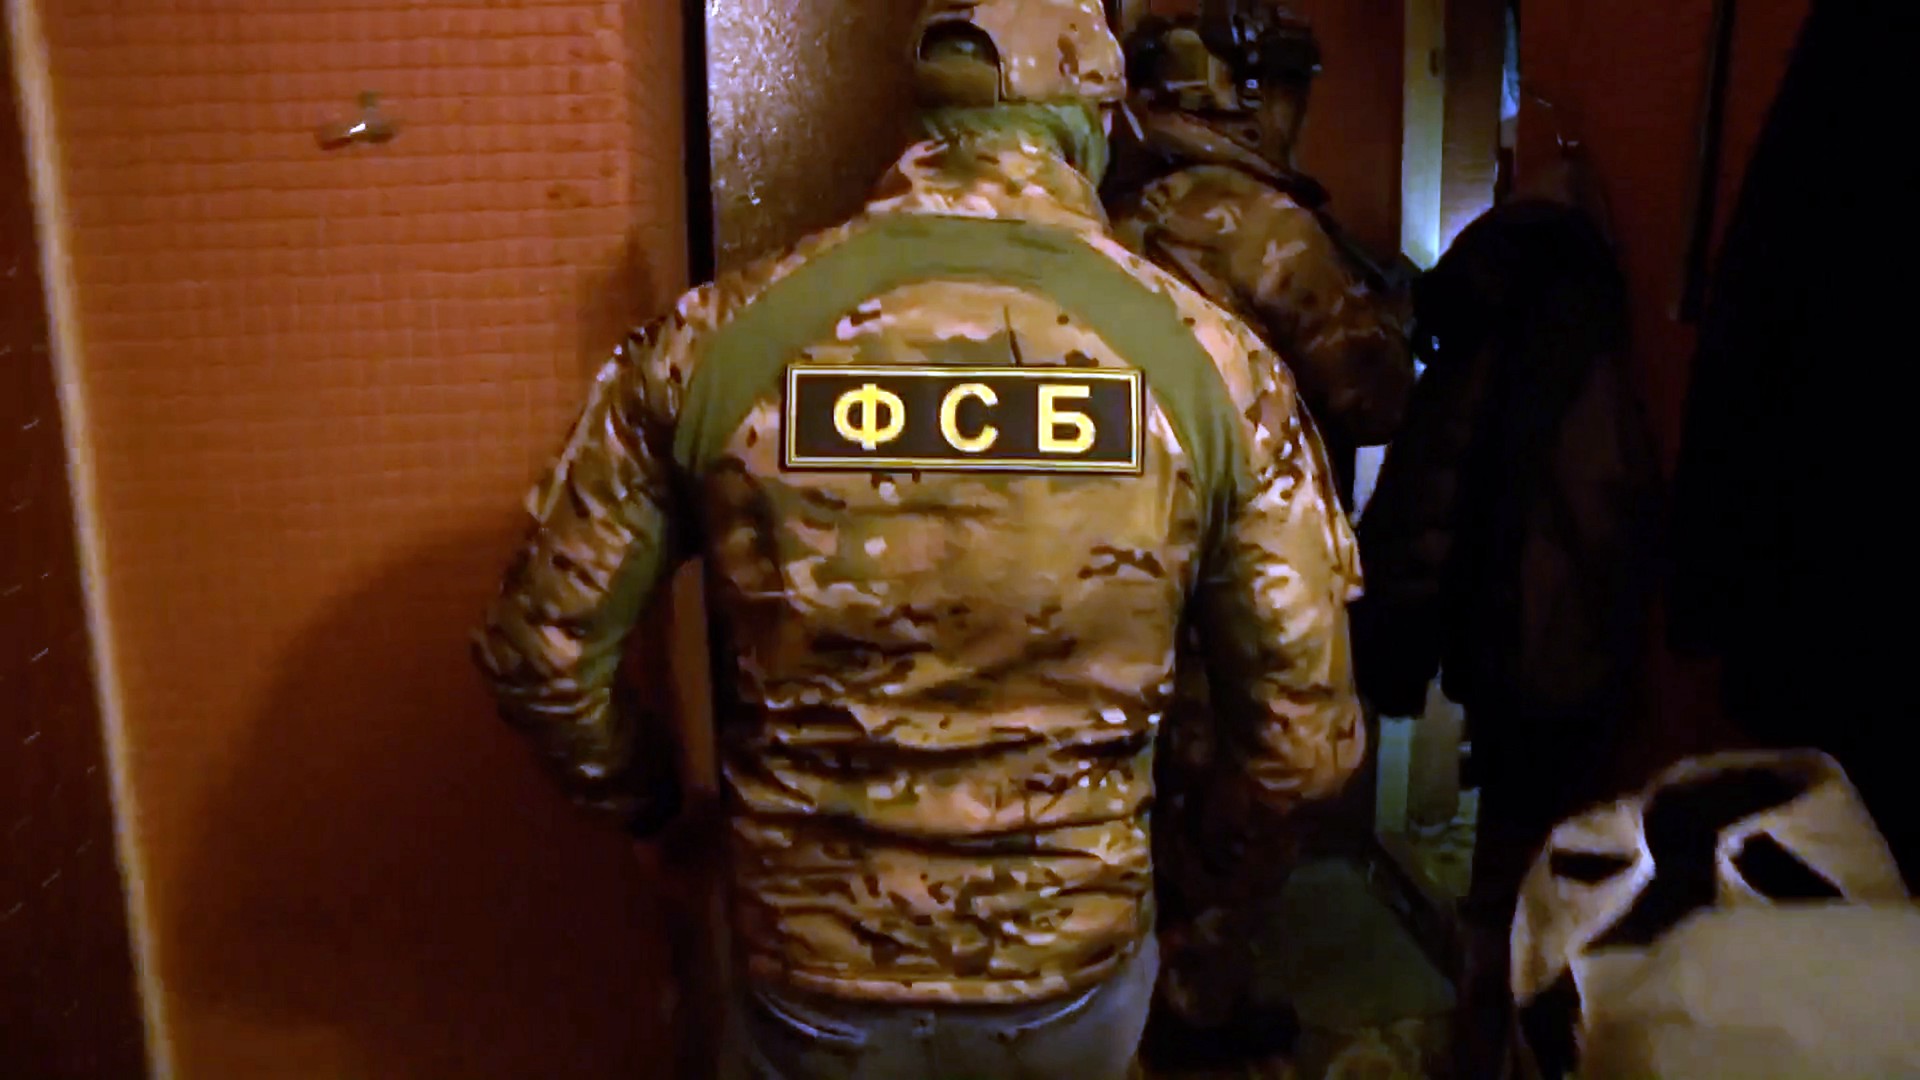 ФСБ задержала в Волгоградской области членов нацистской группировки, готовивших теракт